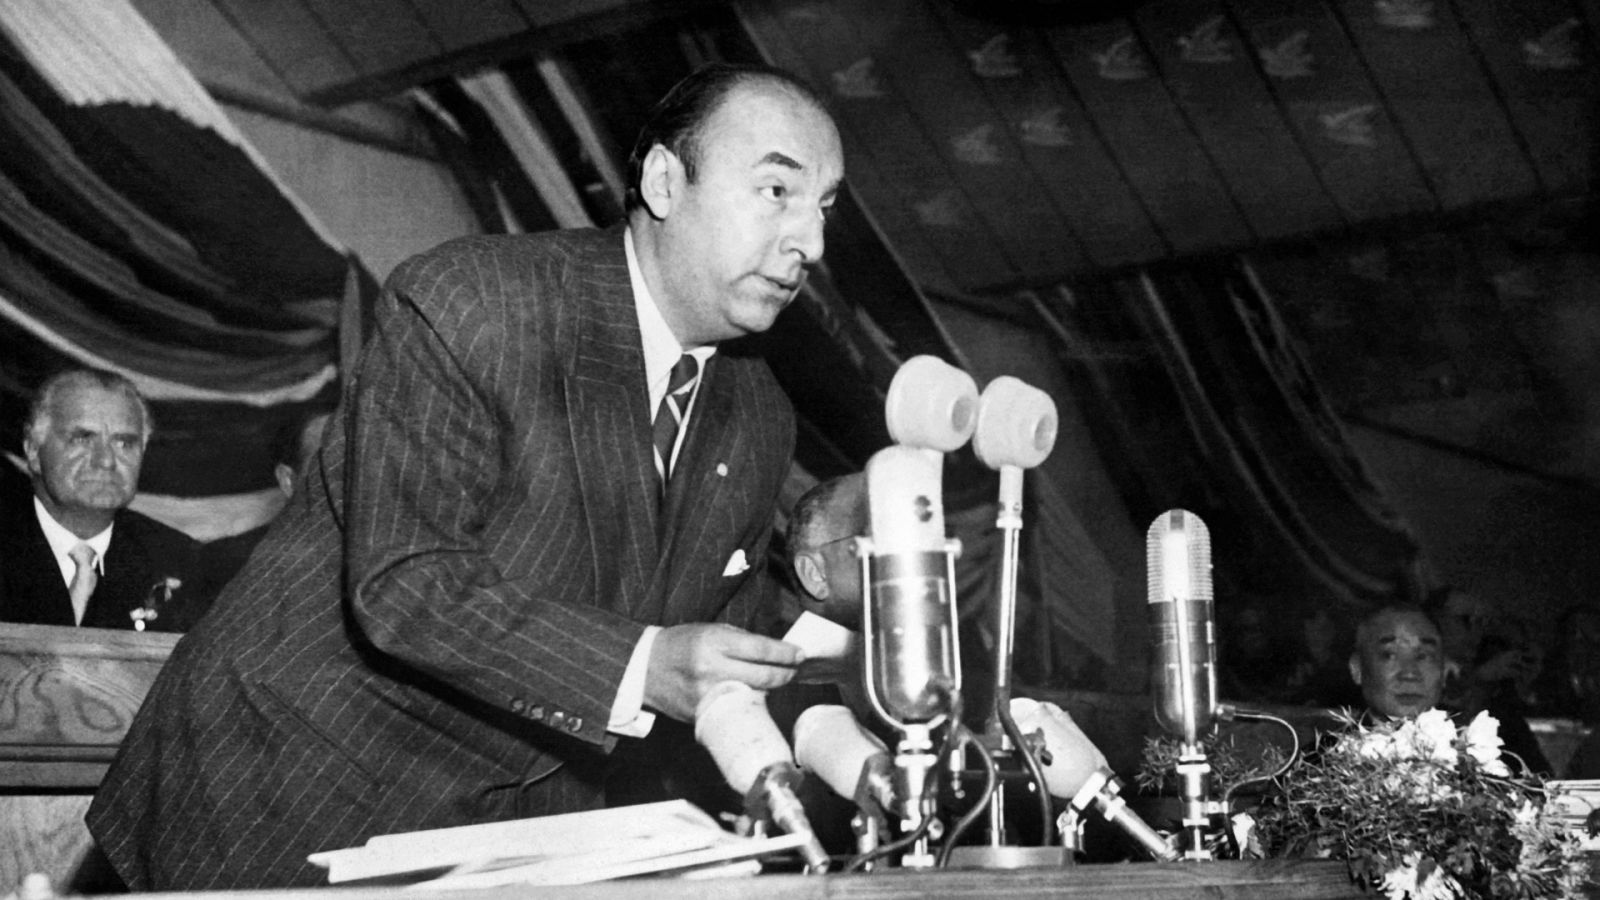 Misterio en torno a la muerte de Pablo Neruda 50 años después